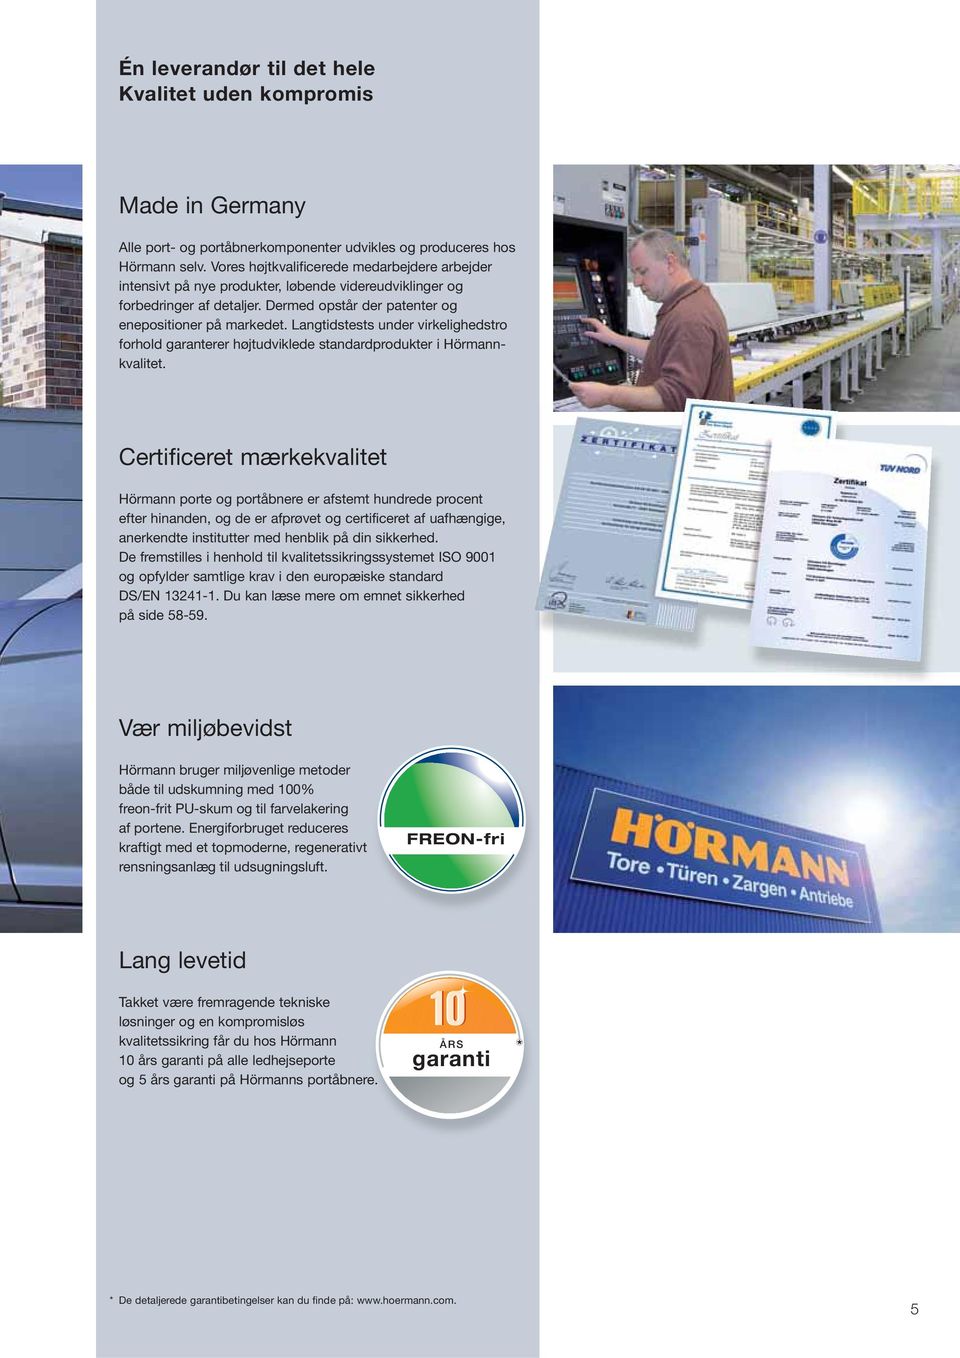 Langtidstests under virkelighedstro forhold garanterer højtudviklede standardprodukter i Hörmannkvalitet.